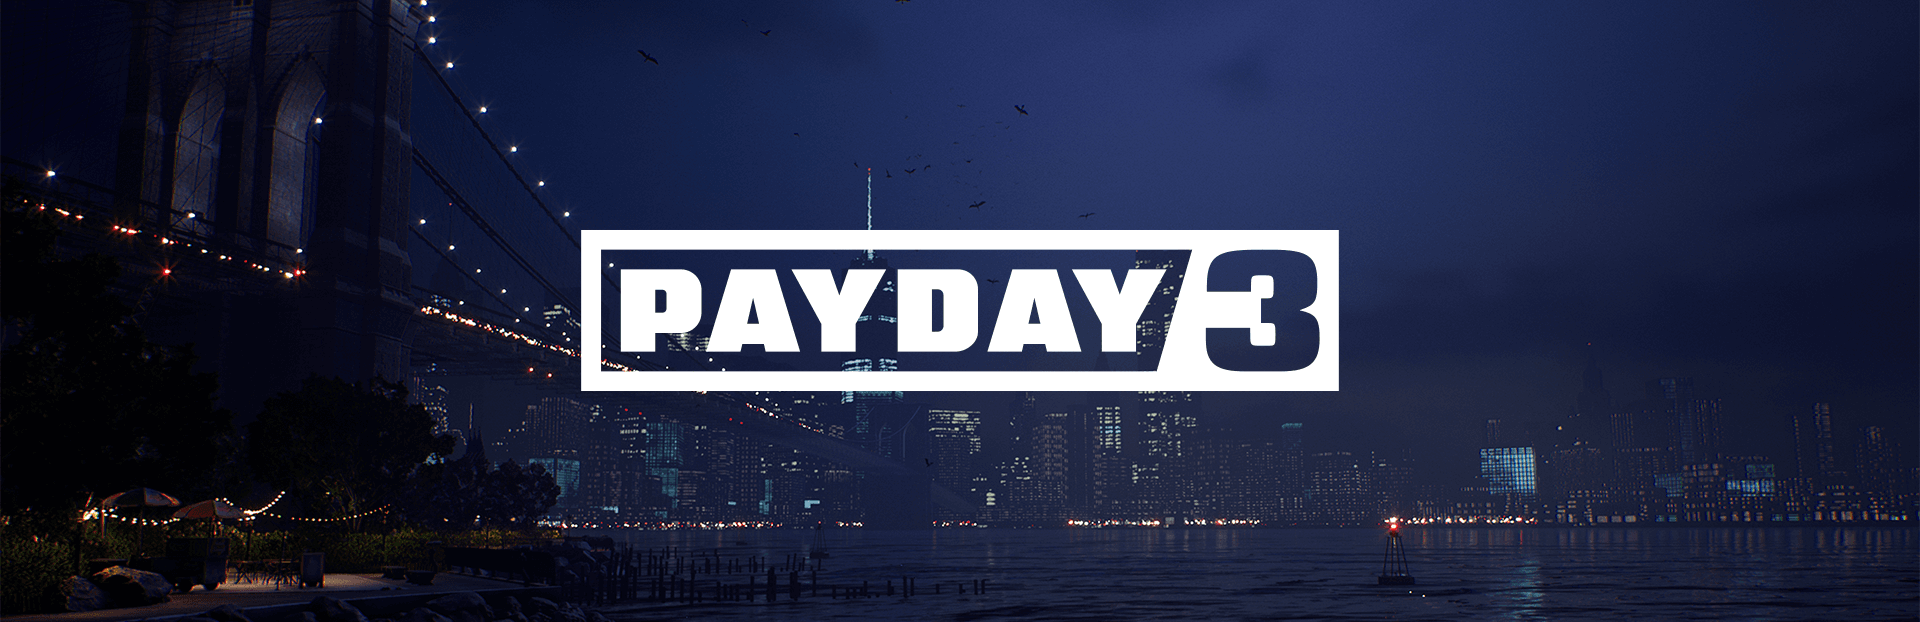 payday-3-il-colpo-al-nostro-cuore-main